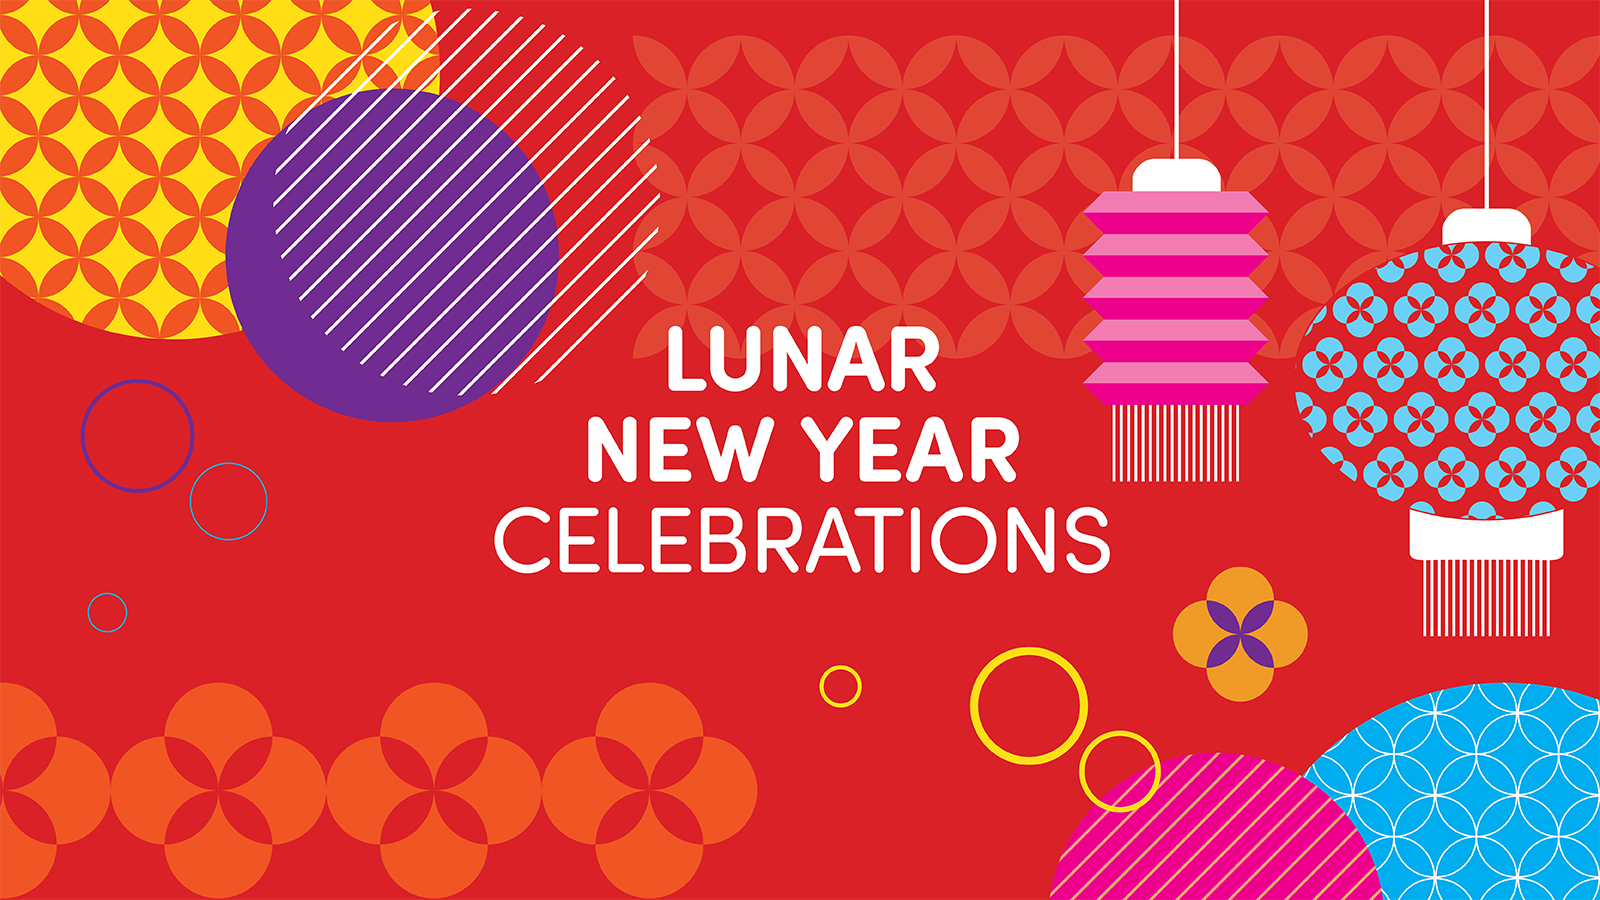 Lunar New Year Celebrations